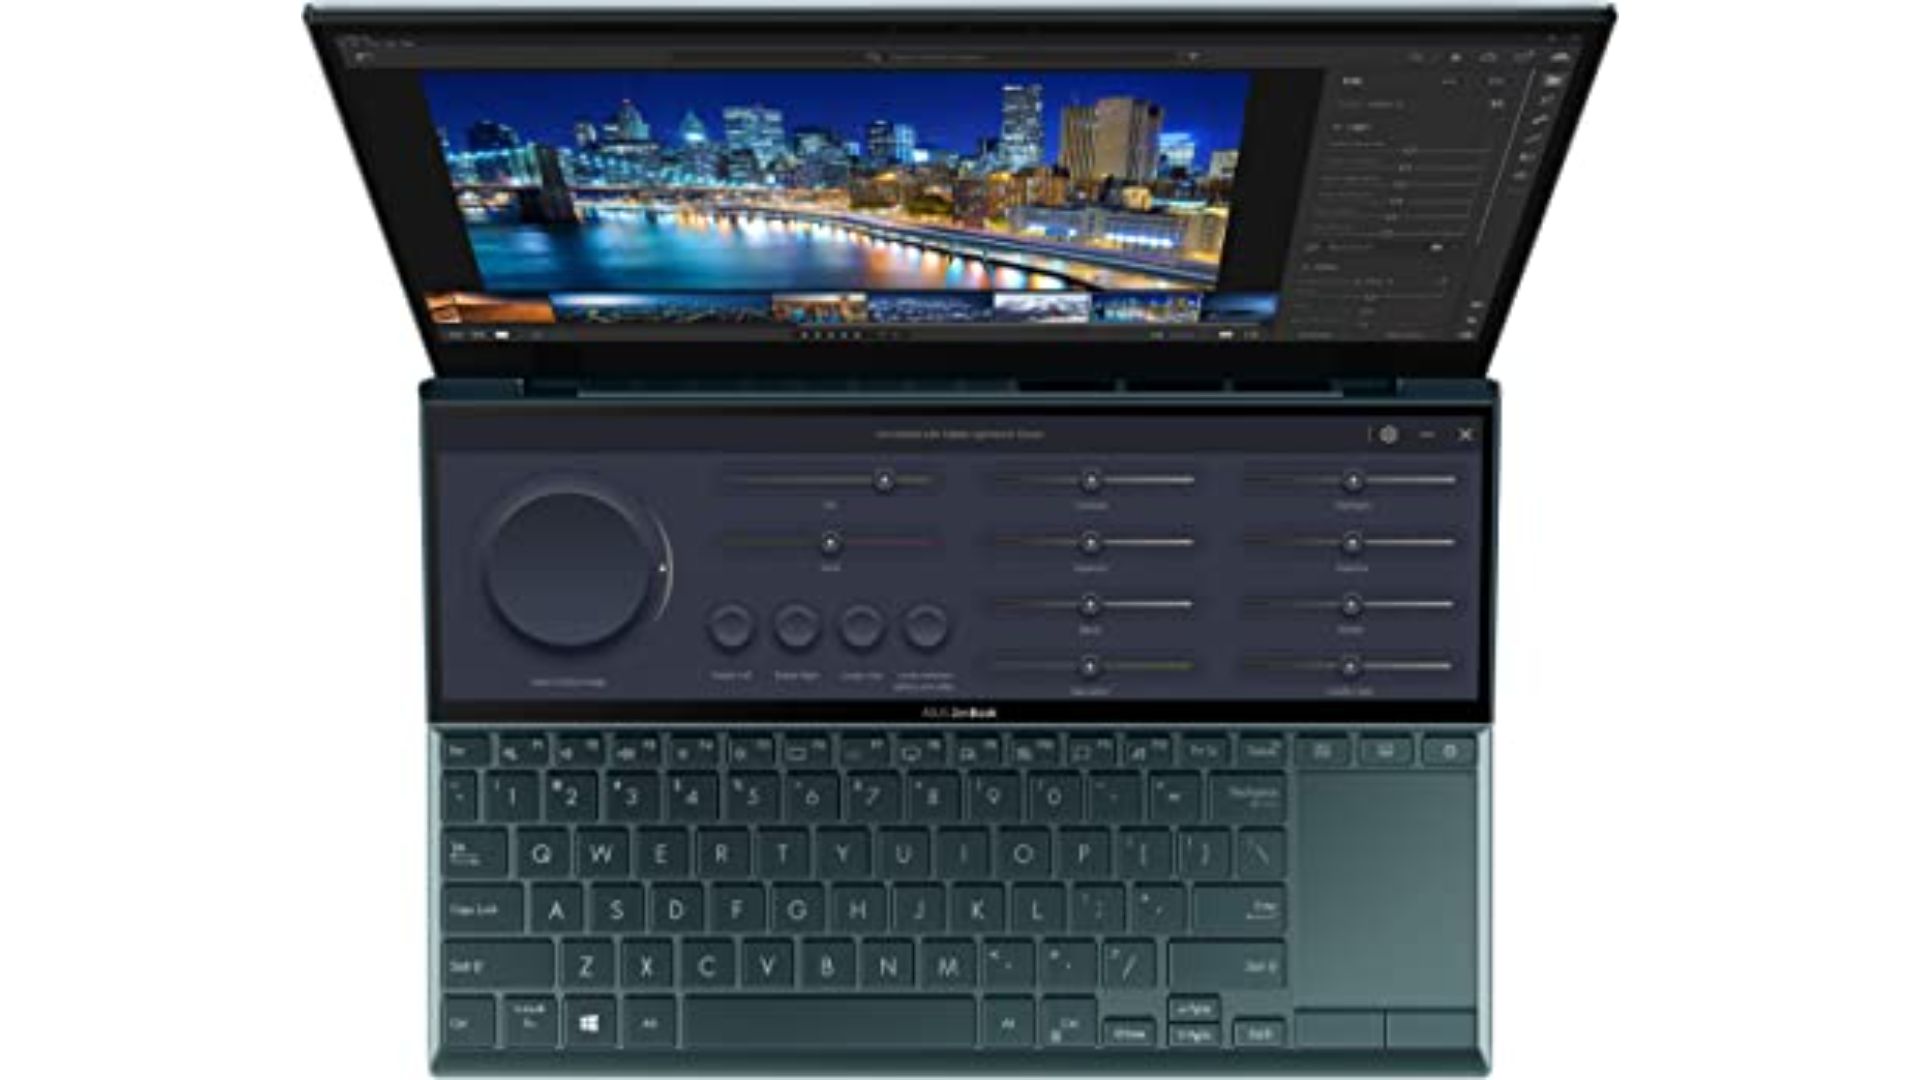 ASUS ZenBook Duo 14 UX482